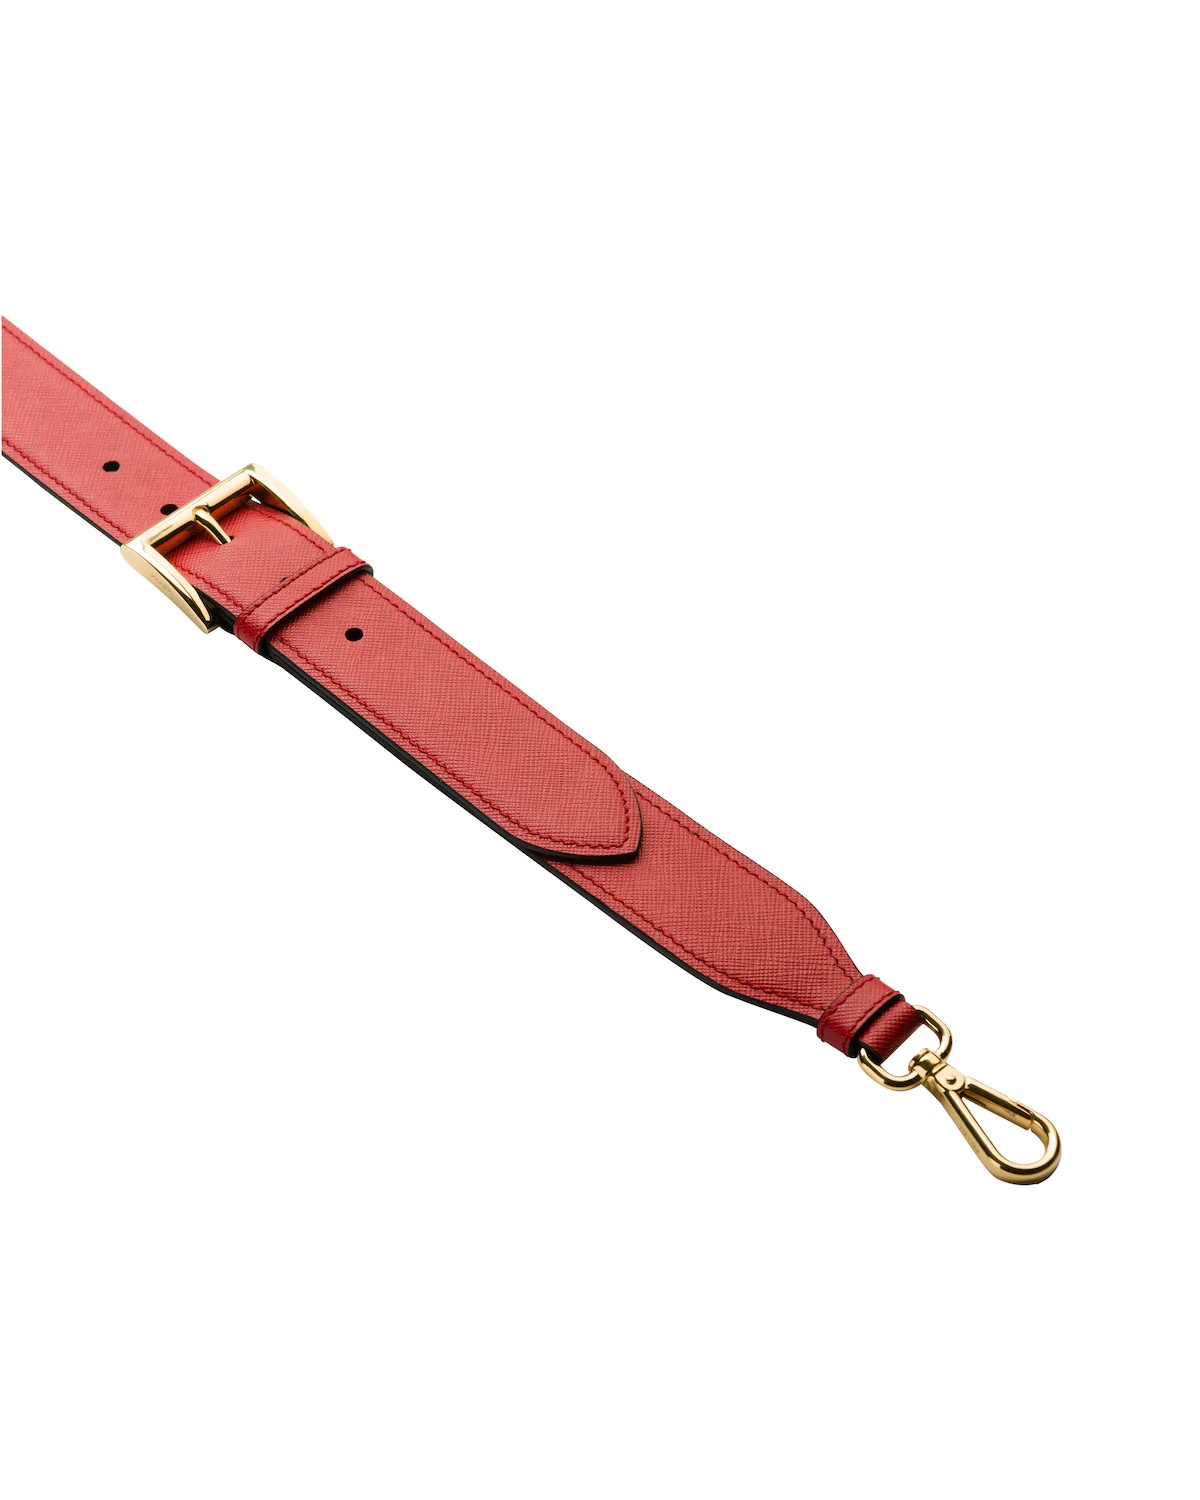 Adjustable Saffiano leather shoulder strap - 3